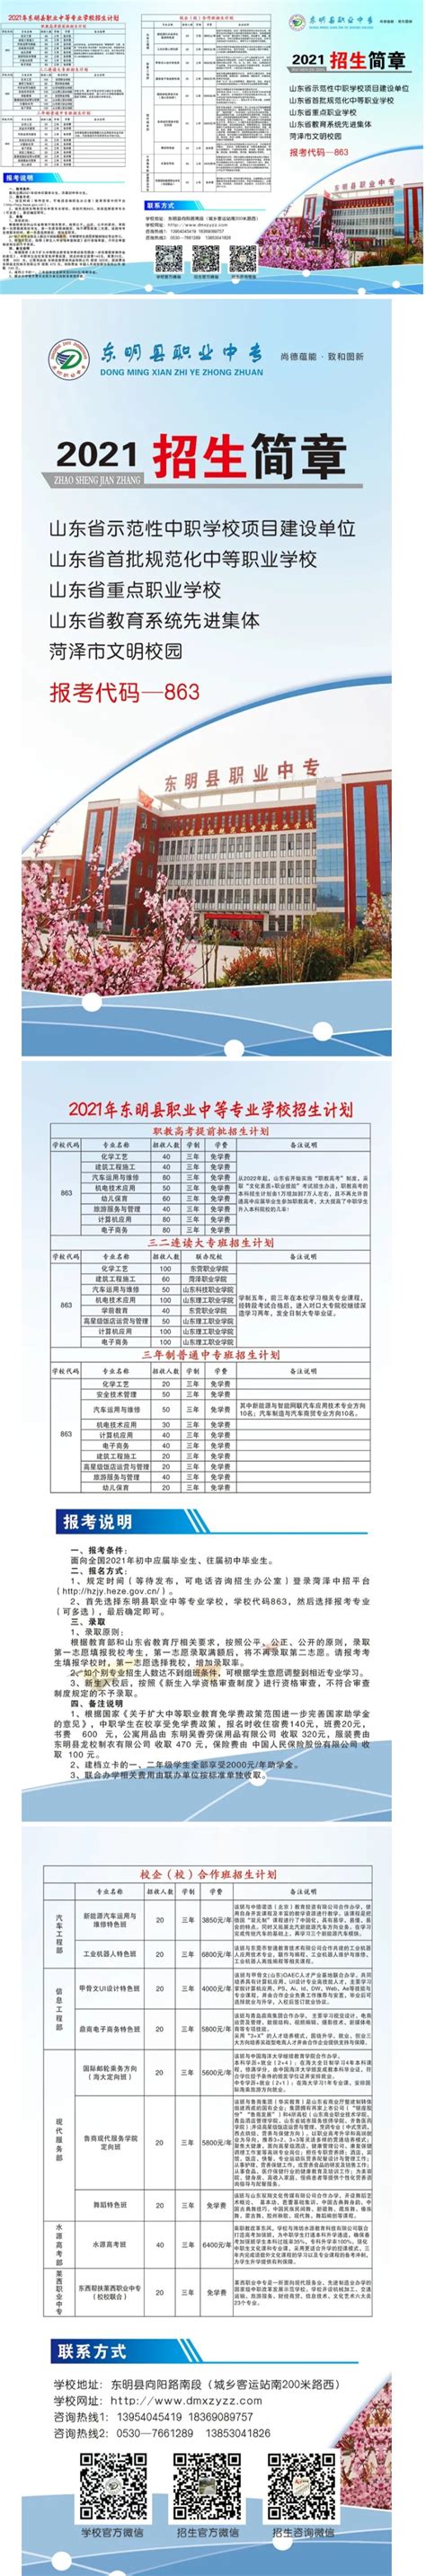 东明县职业中等专业学校2021年招生简章 - 职教网